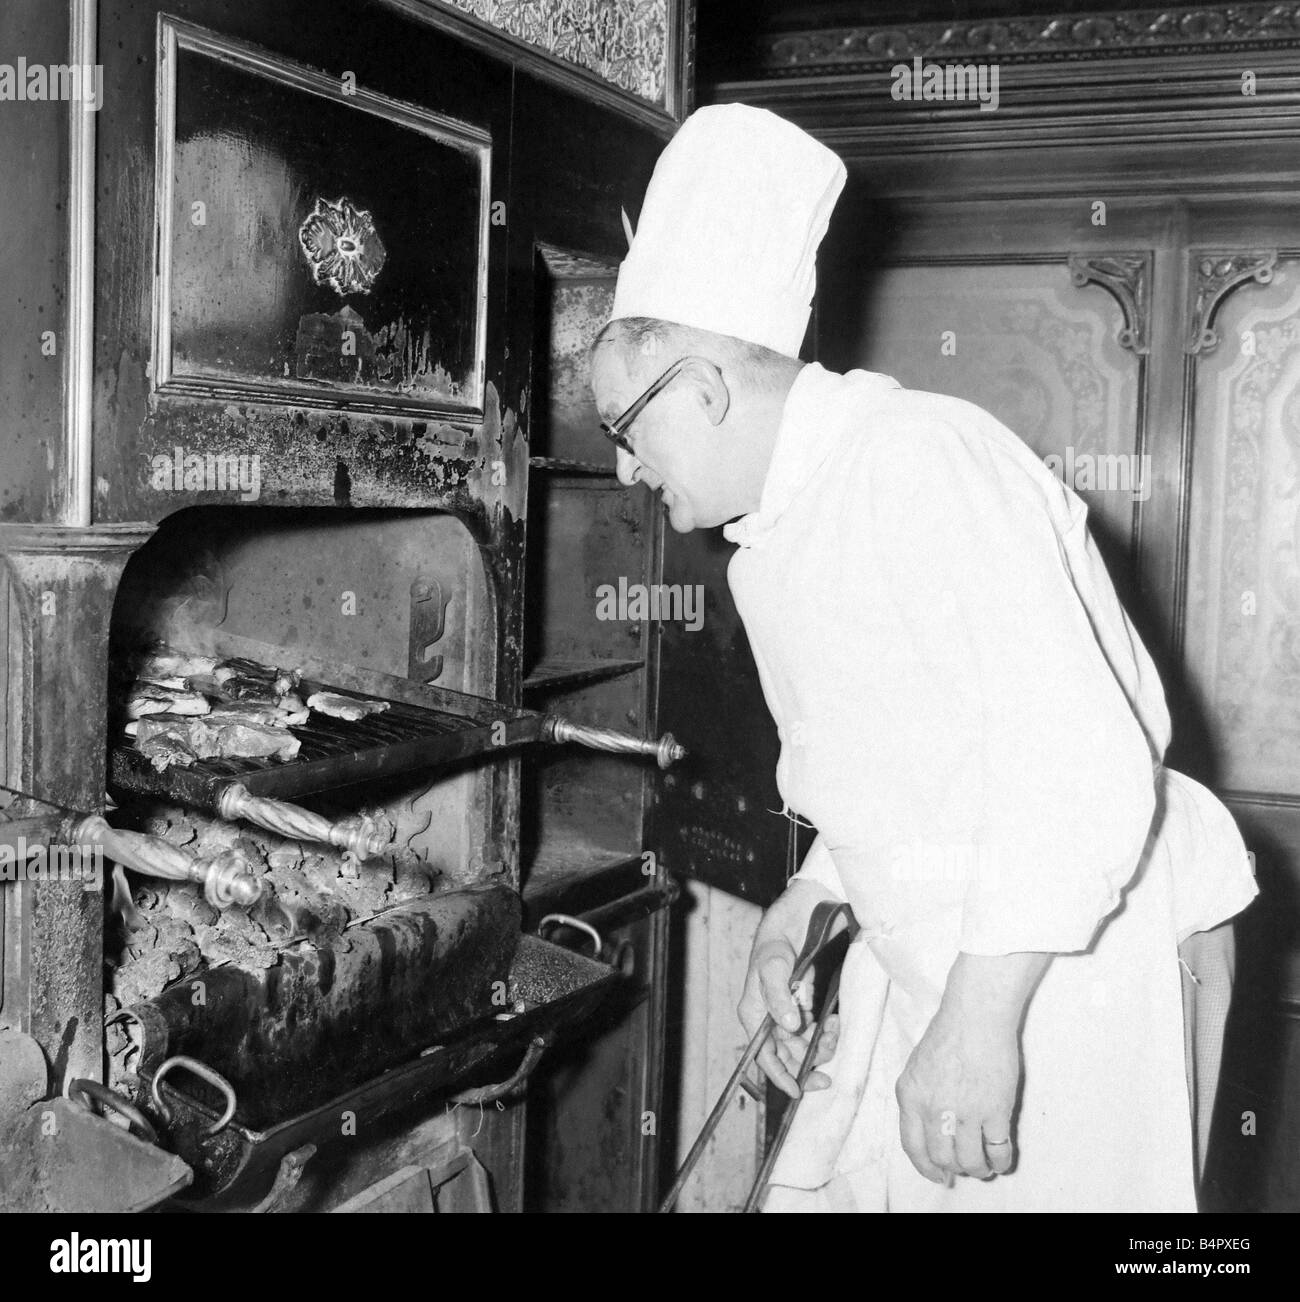 Steaks de grésillement cuit sur un feu de charbon ont longtemps été une caractéristique de l'échange Grill un des restaurants underground Birmingham cet ordre de cuisson est Arthur Norman qui a été chef du grill pour plus de 20 ans maintenant, il grillades 150lbs de viande par jour Août 1959 Banque D'Images